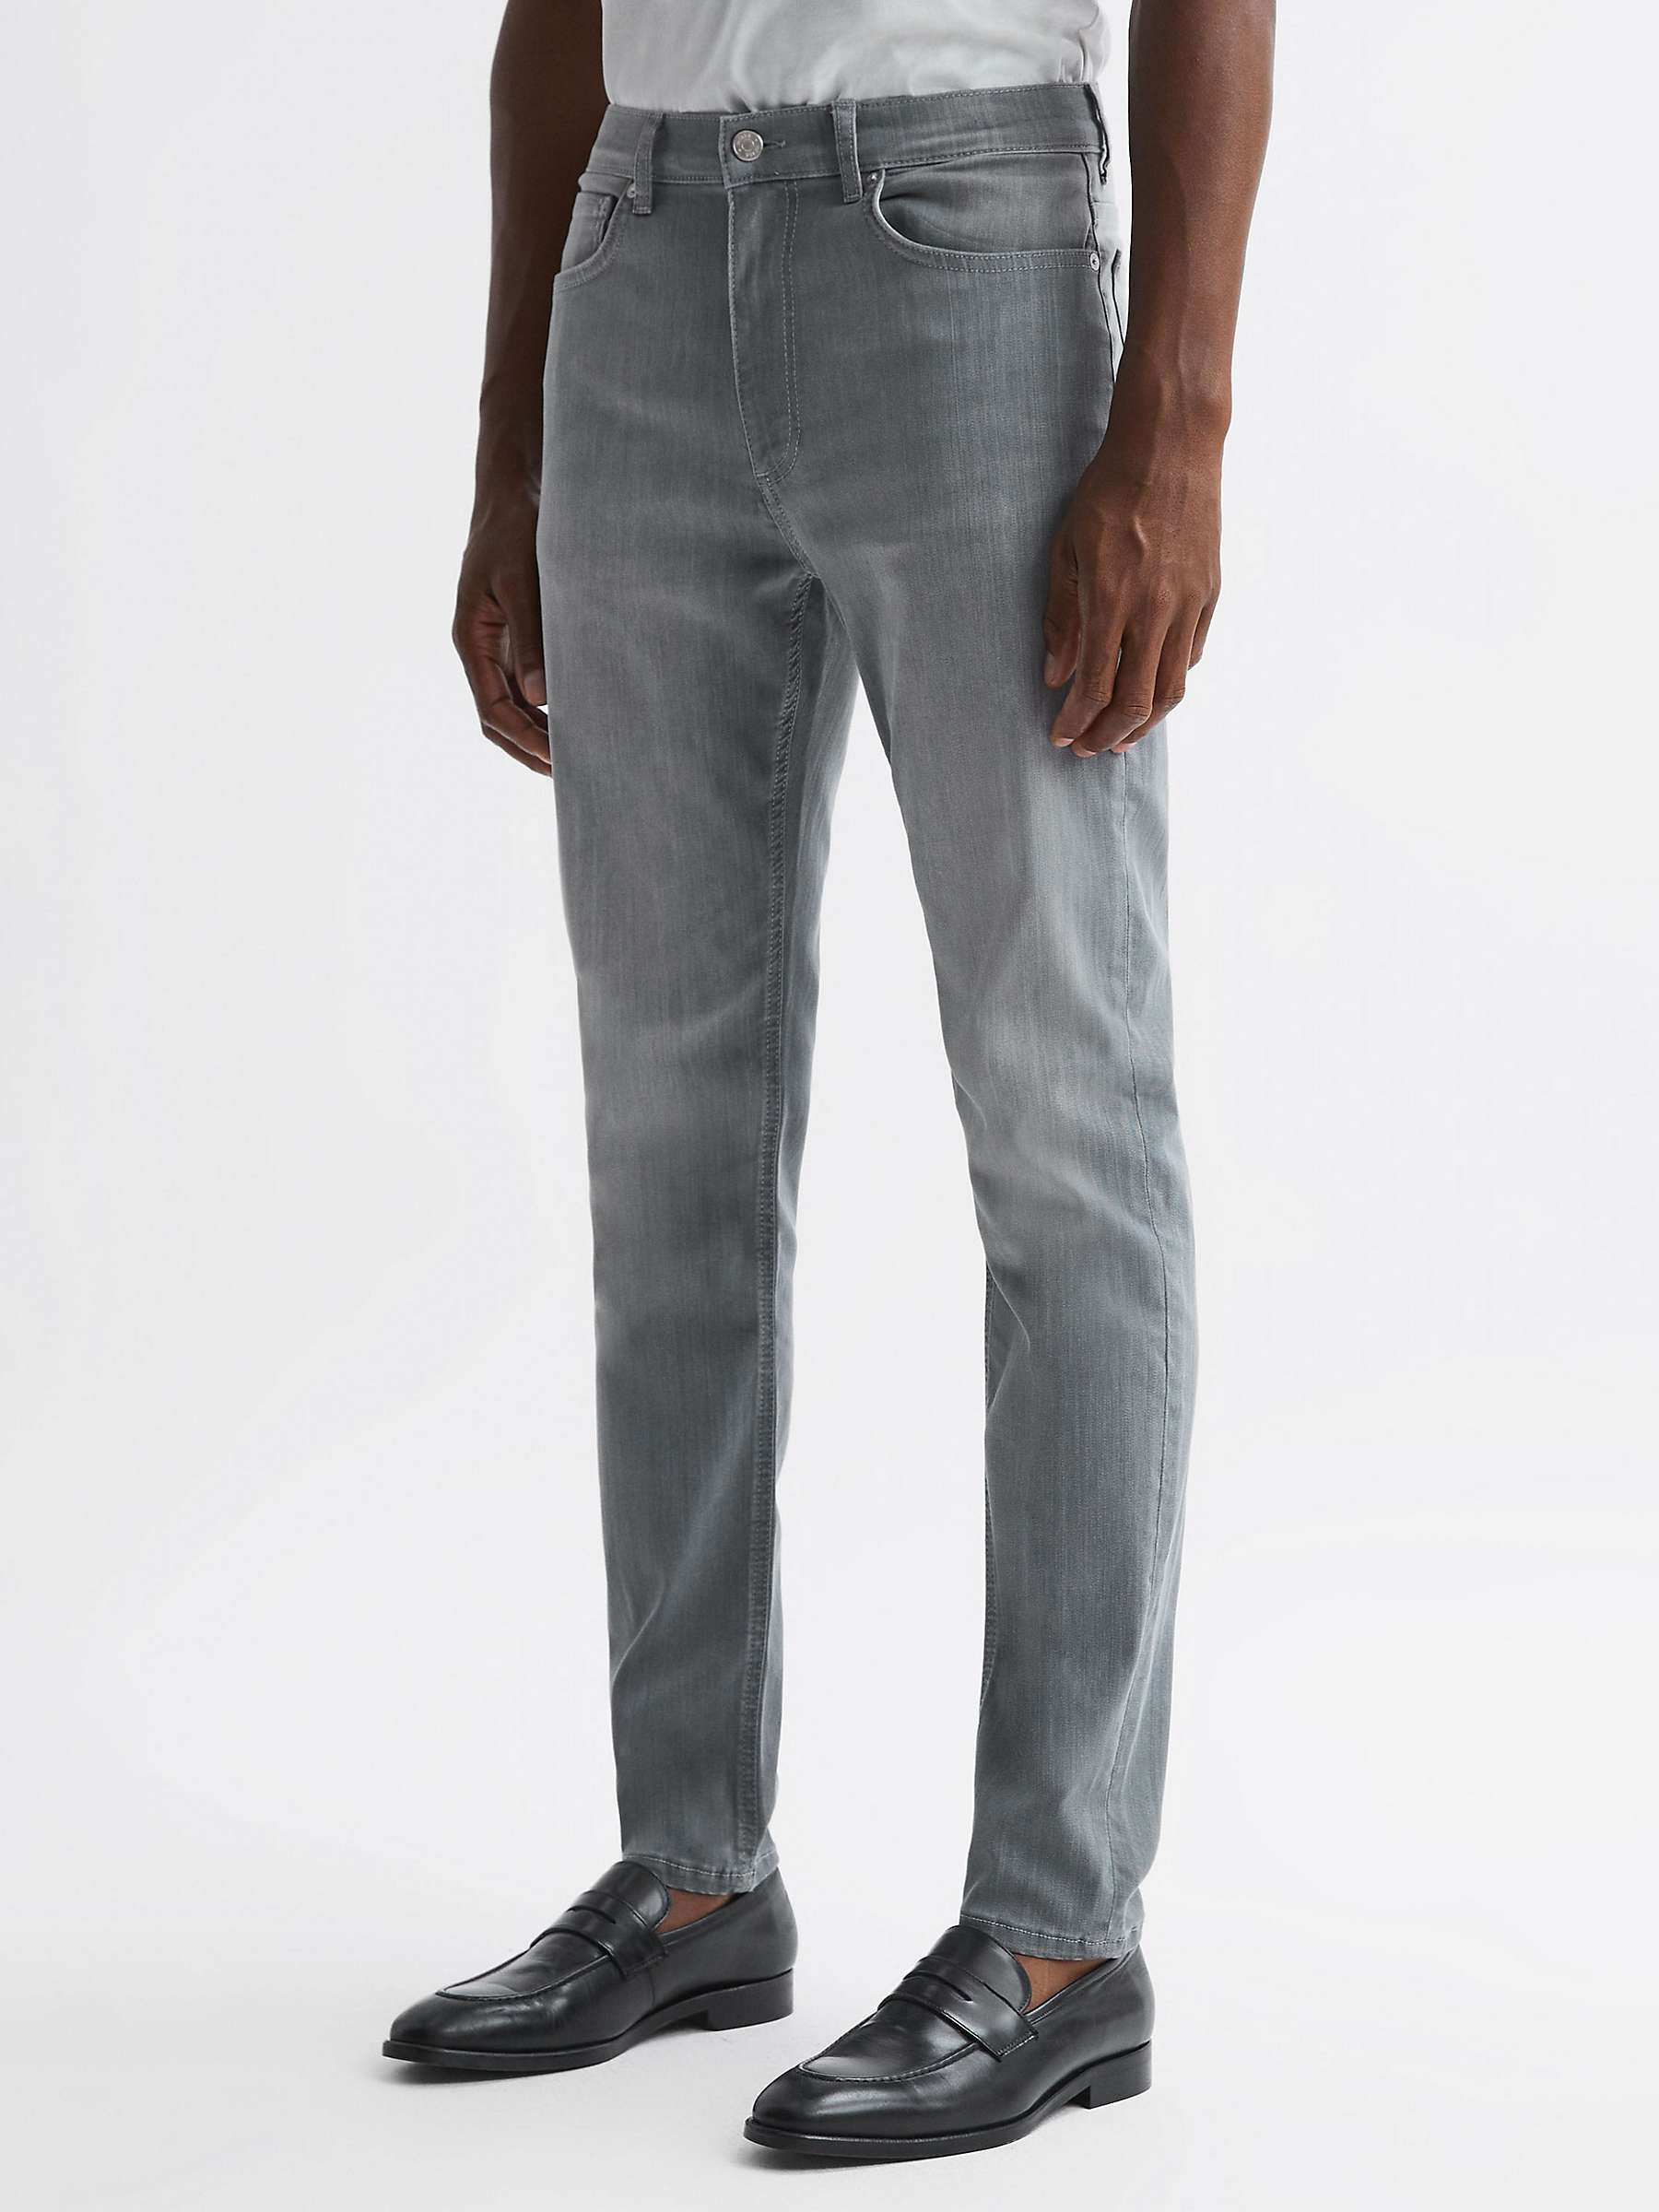 Buy Reiss Harry Slim Jeans, Grey Online at johnlewis.com